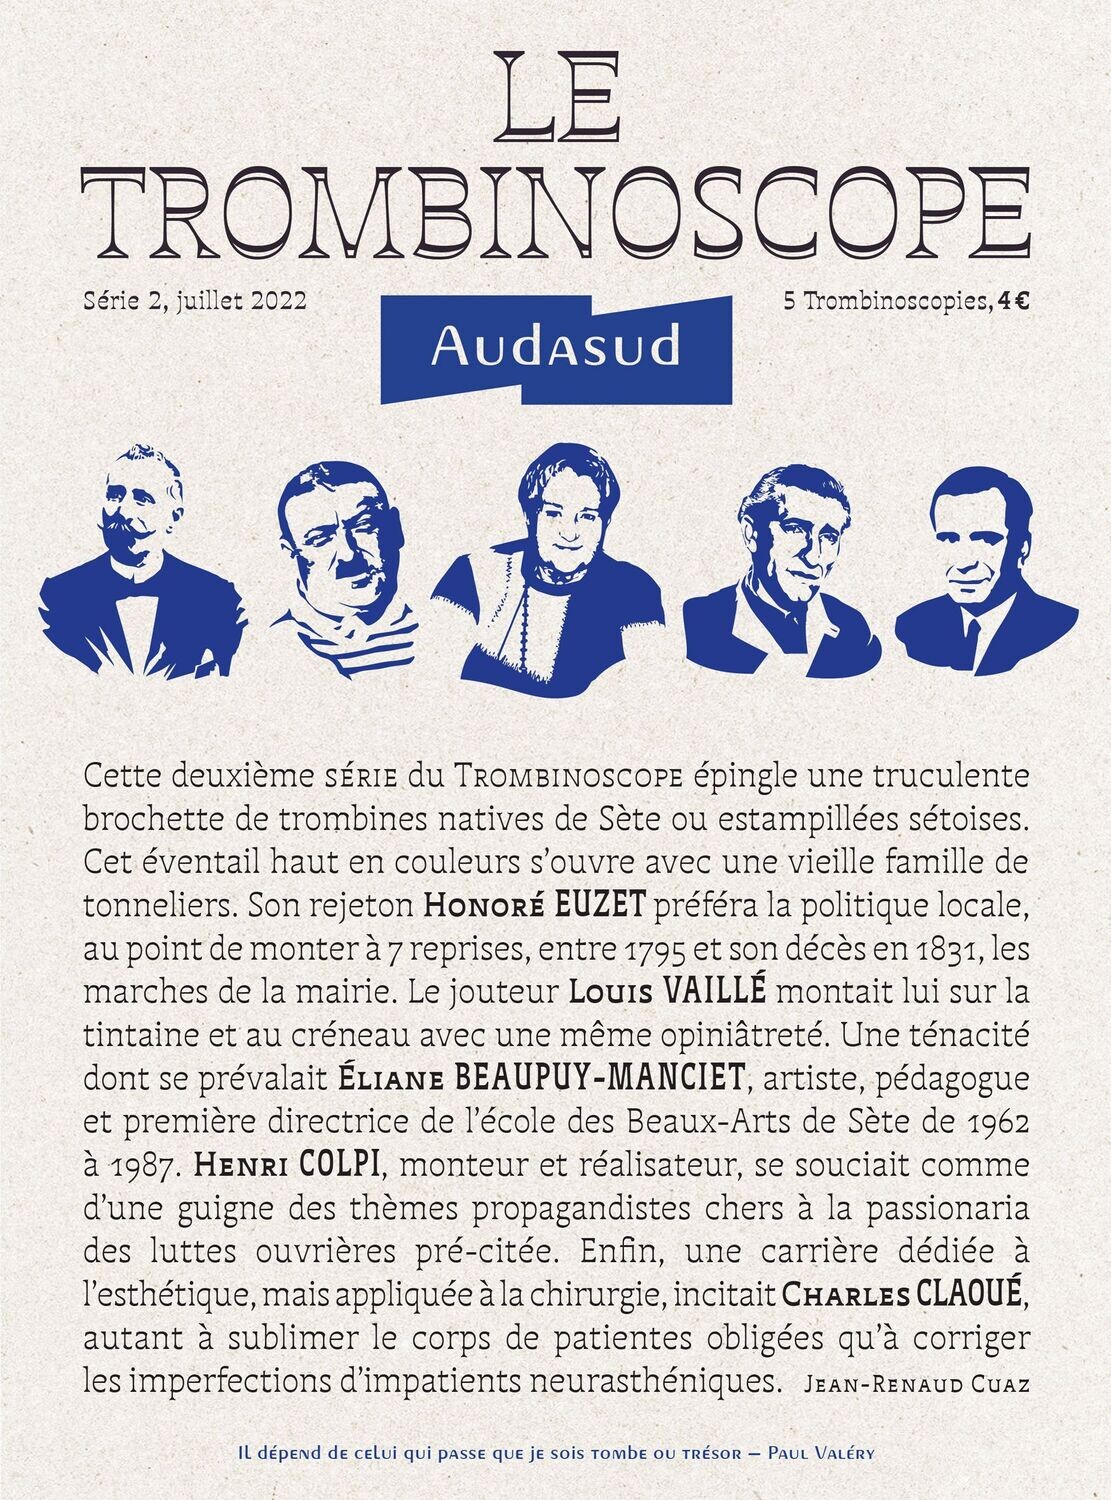 LE TROMBINOSCOPE Audasud - Série 2, 5 Trombinoscopies